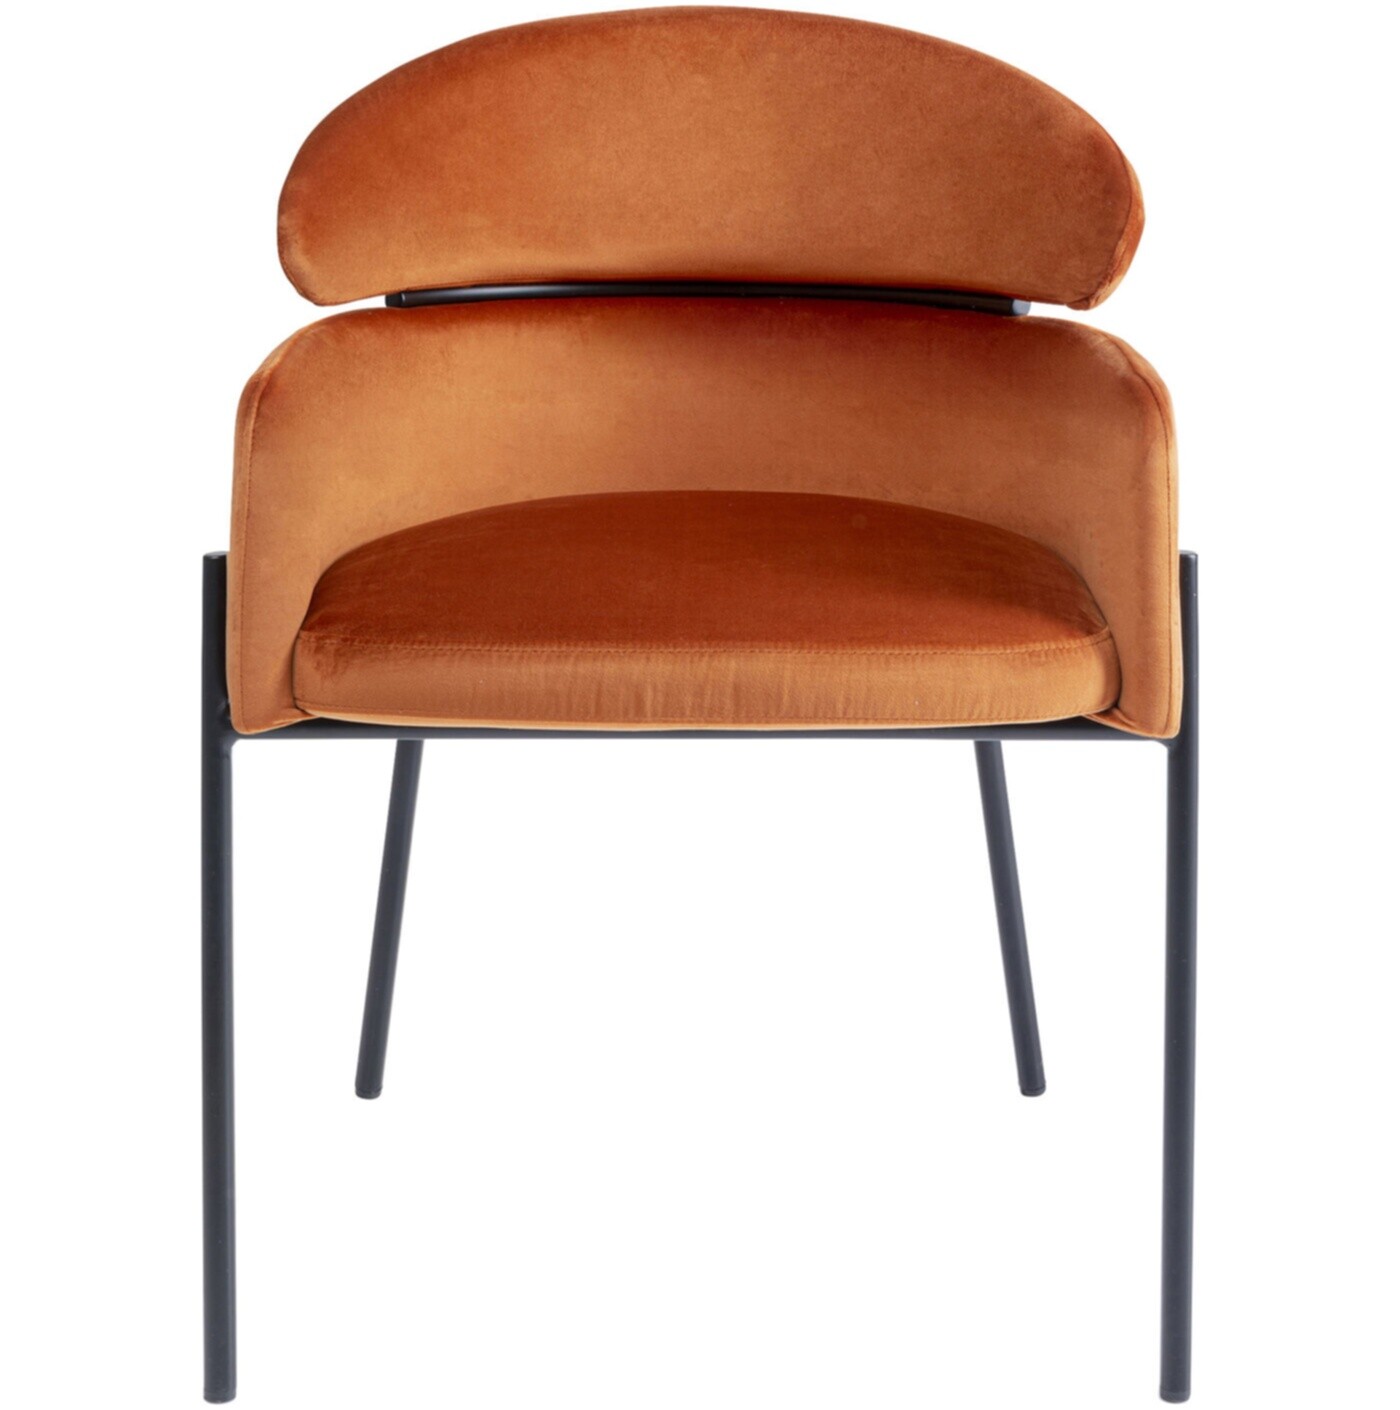 Кухонный стул мягкий с подлокотниками оранжевый Alexia 85679